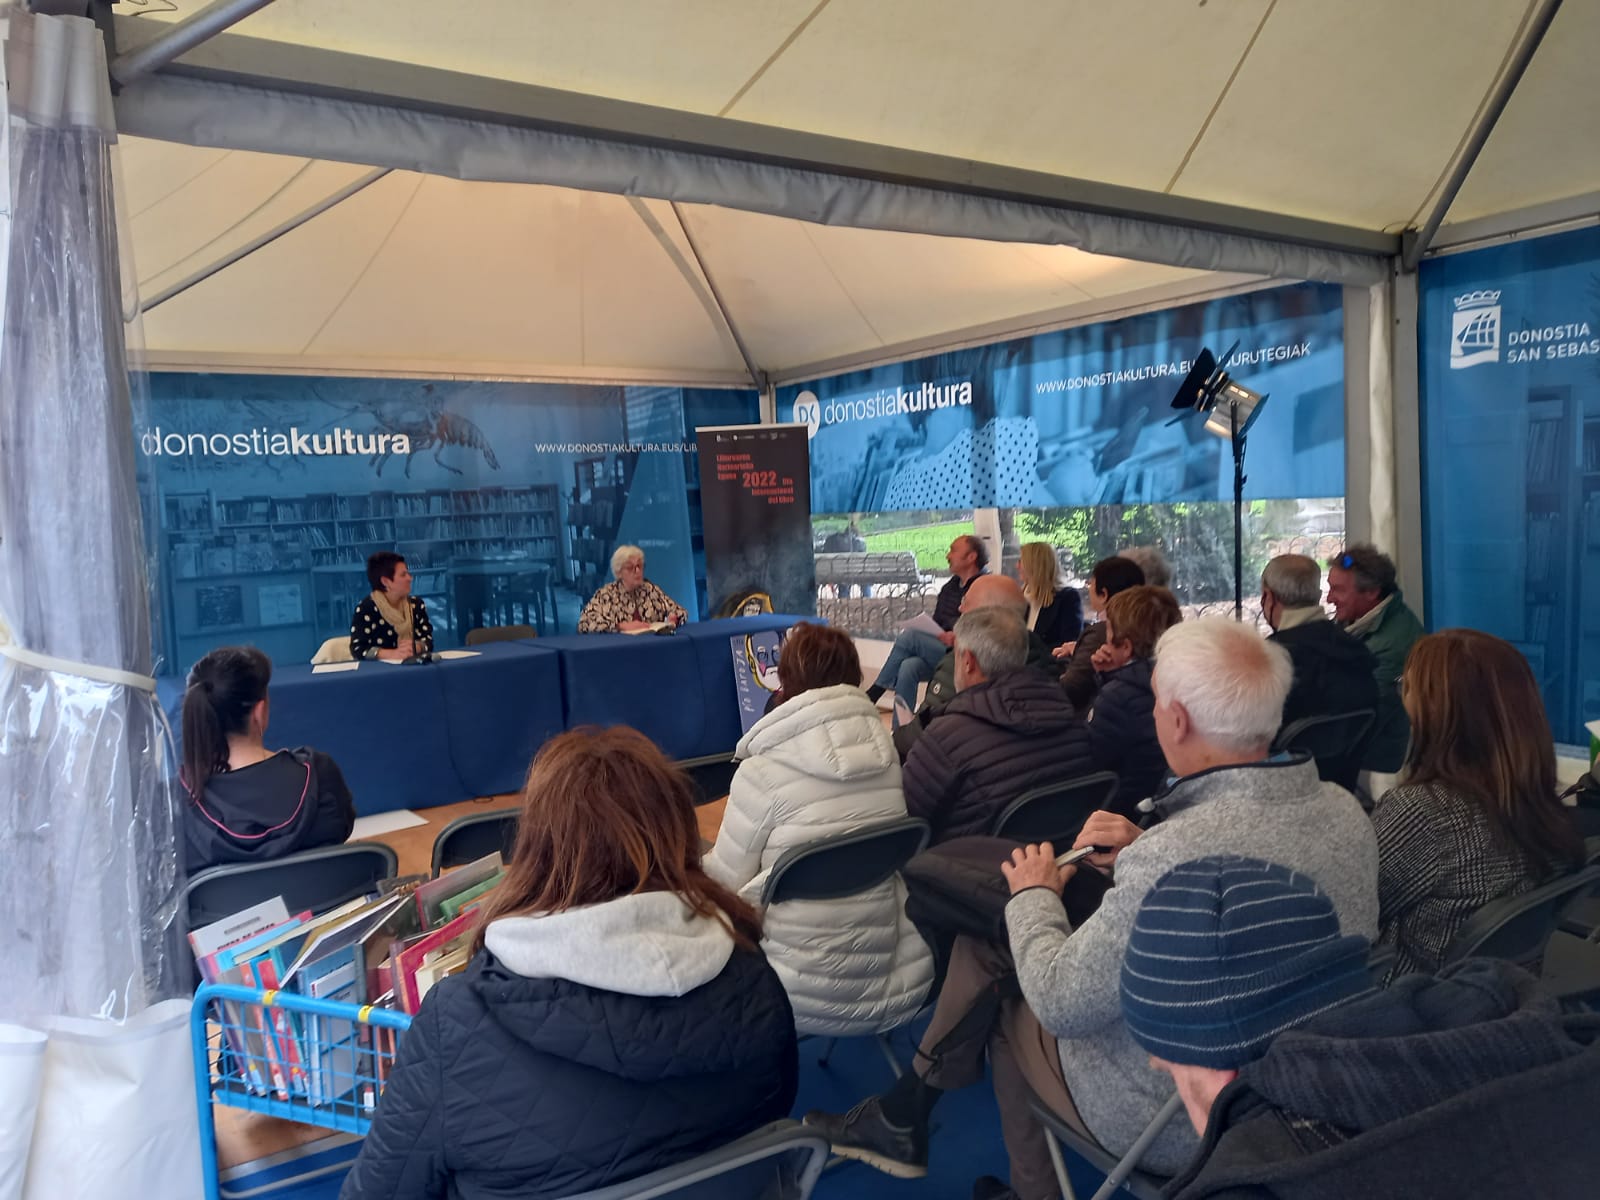 Feria del libro3 - Buena afluencia a la Feria del libro 2022 de Donostia en sus primeras horas